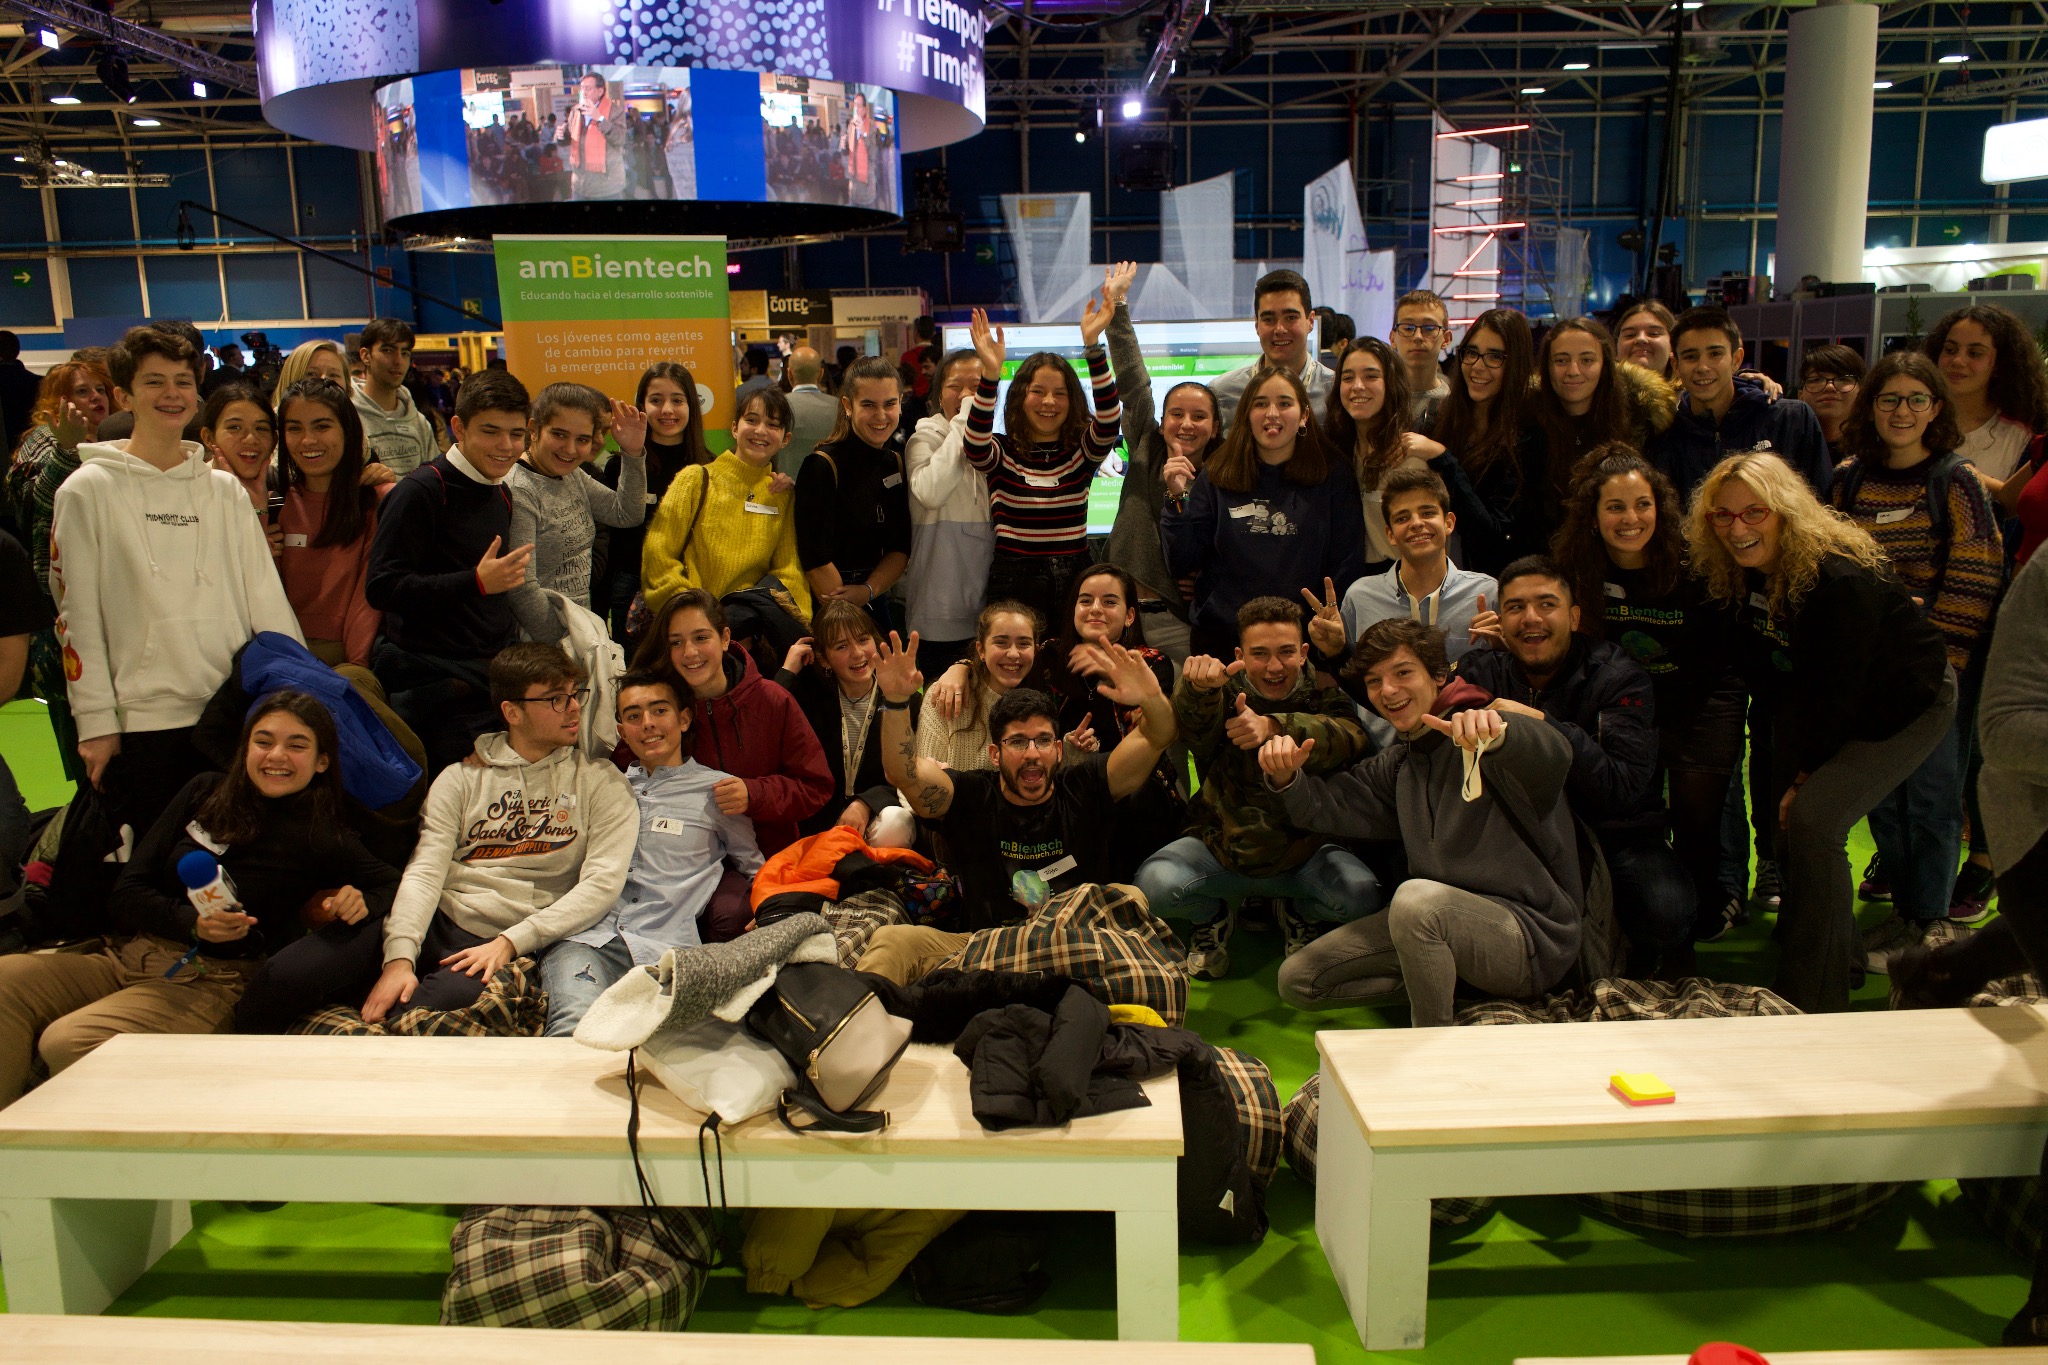 Grupo de alumnos celebrando que han acabado el debate sobre la emergencia climática en la COP25 organizado por ambientech.